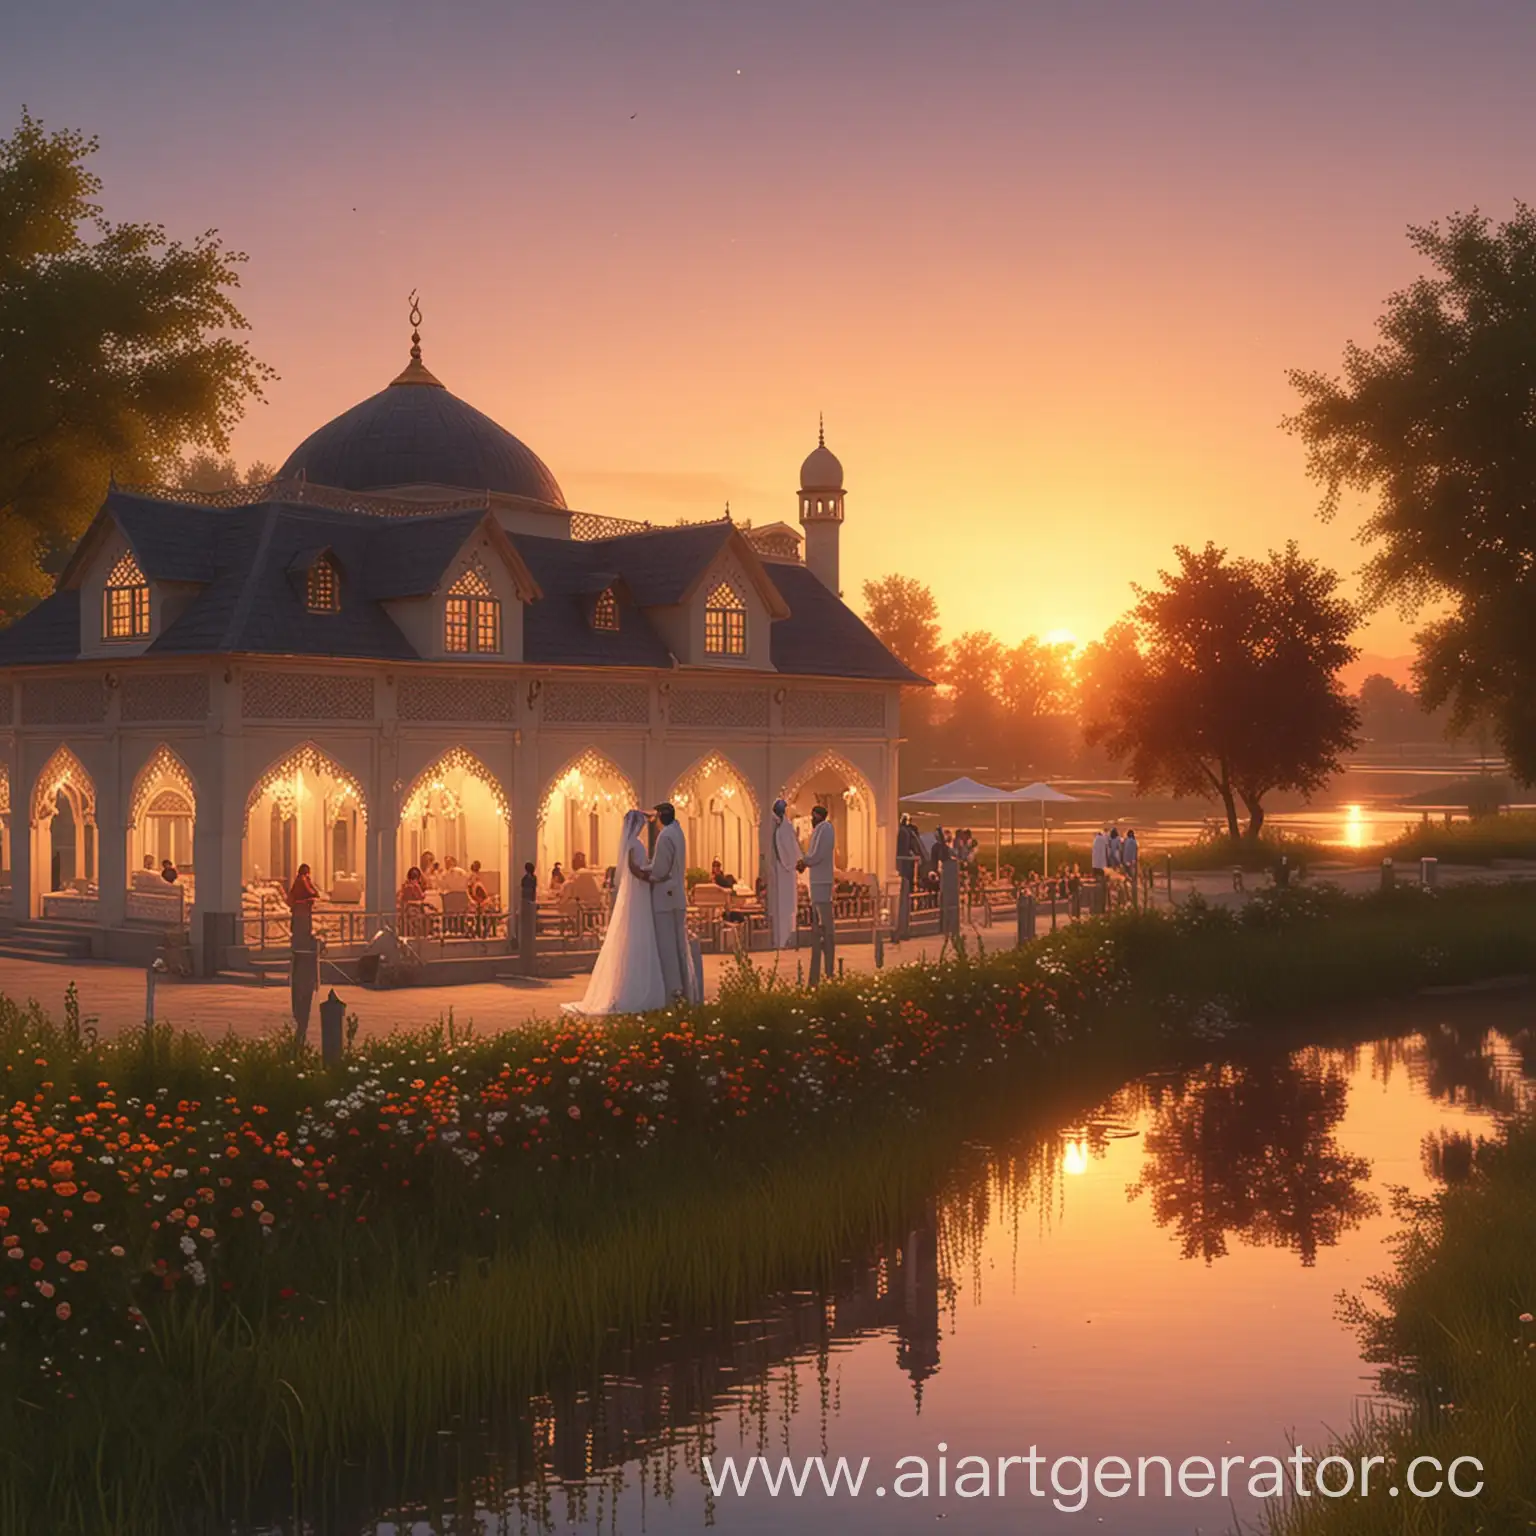 Мусульманская свадьба на берегу реки, загородний дом, закат. анимационный стиль